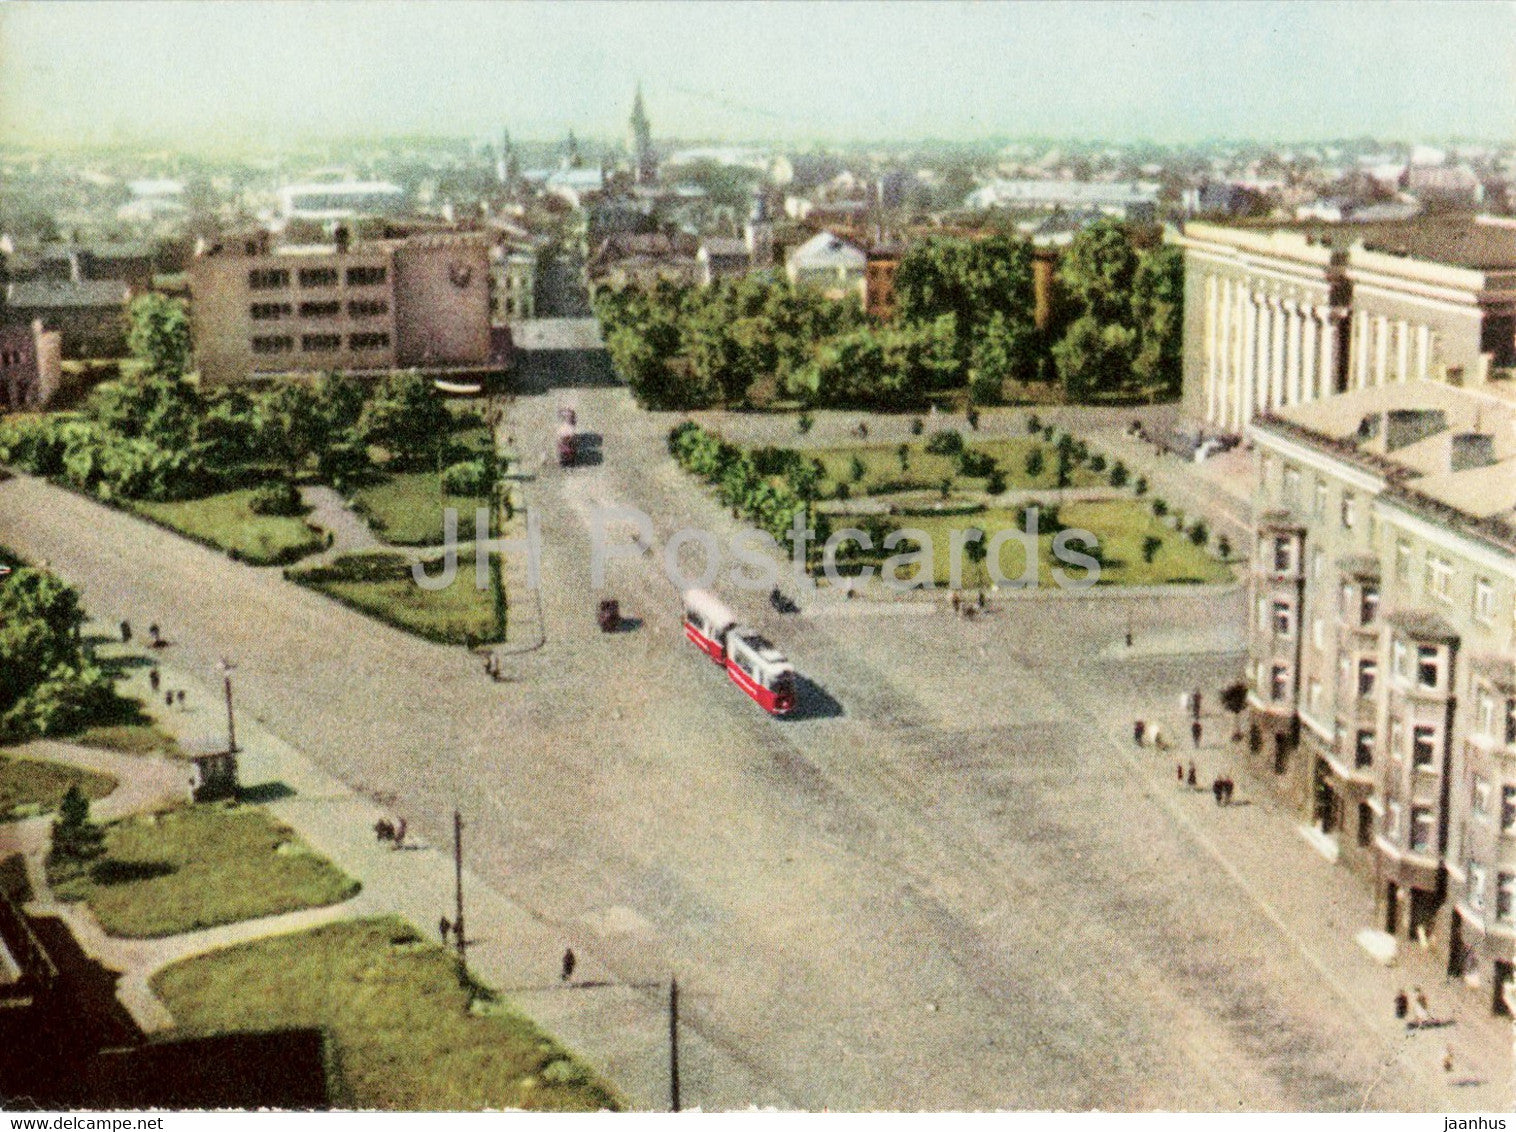 Liepaja - tram - 1963 - Latvia USSR - unused - JH Postcards